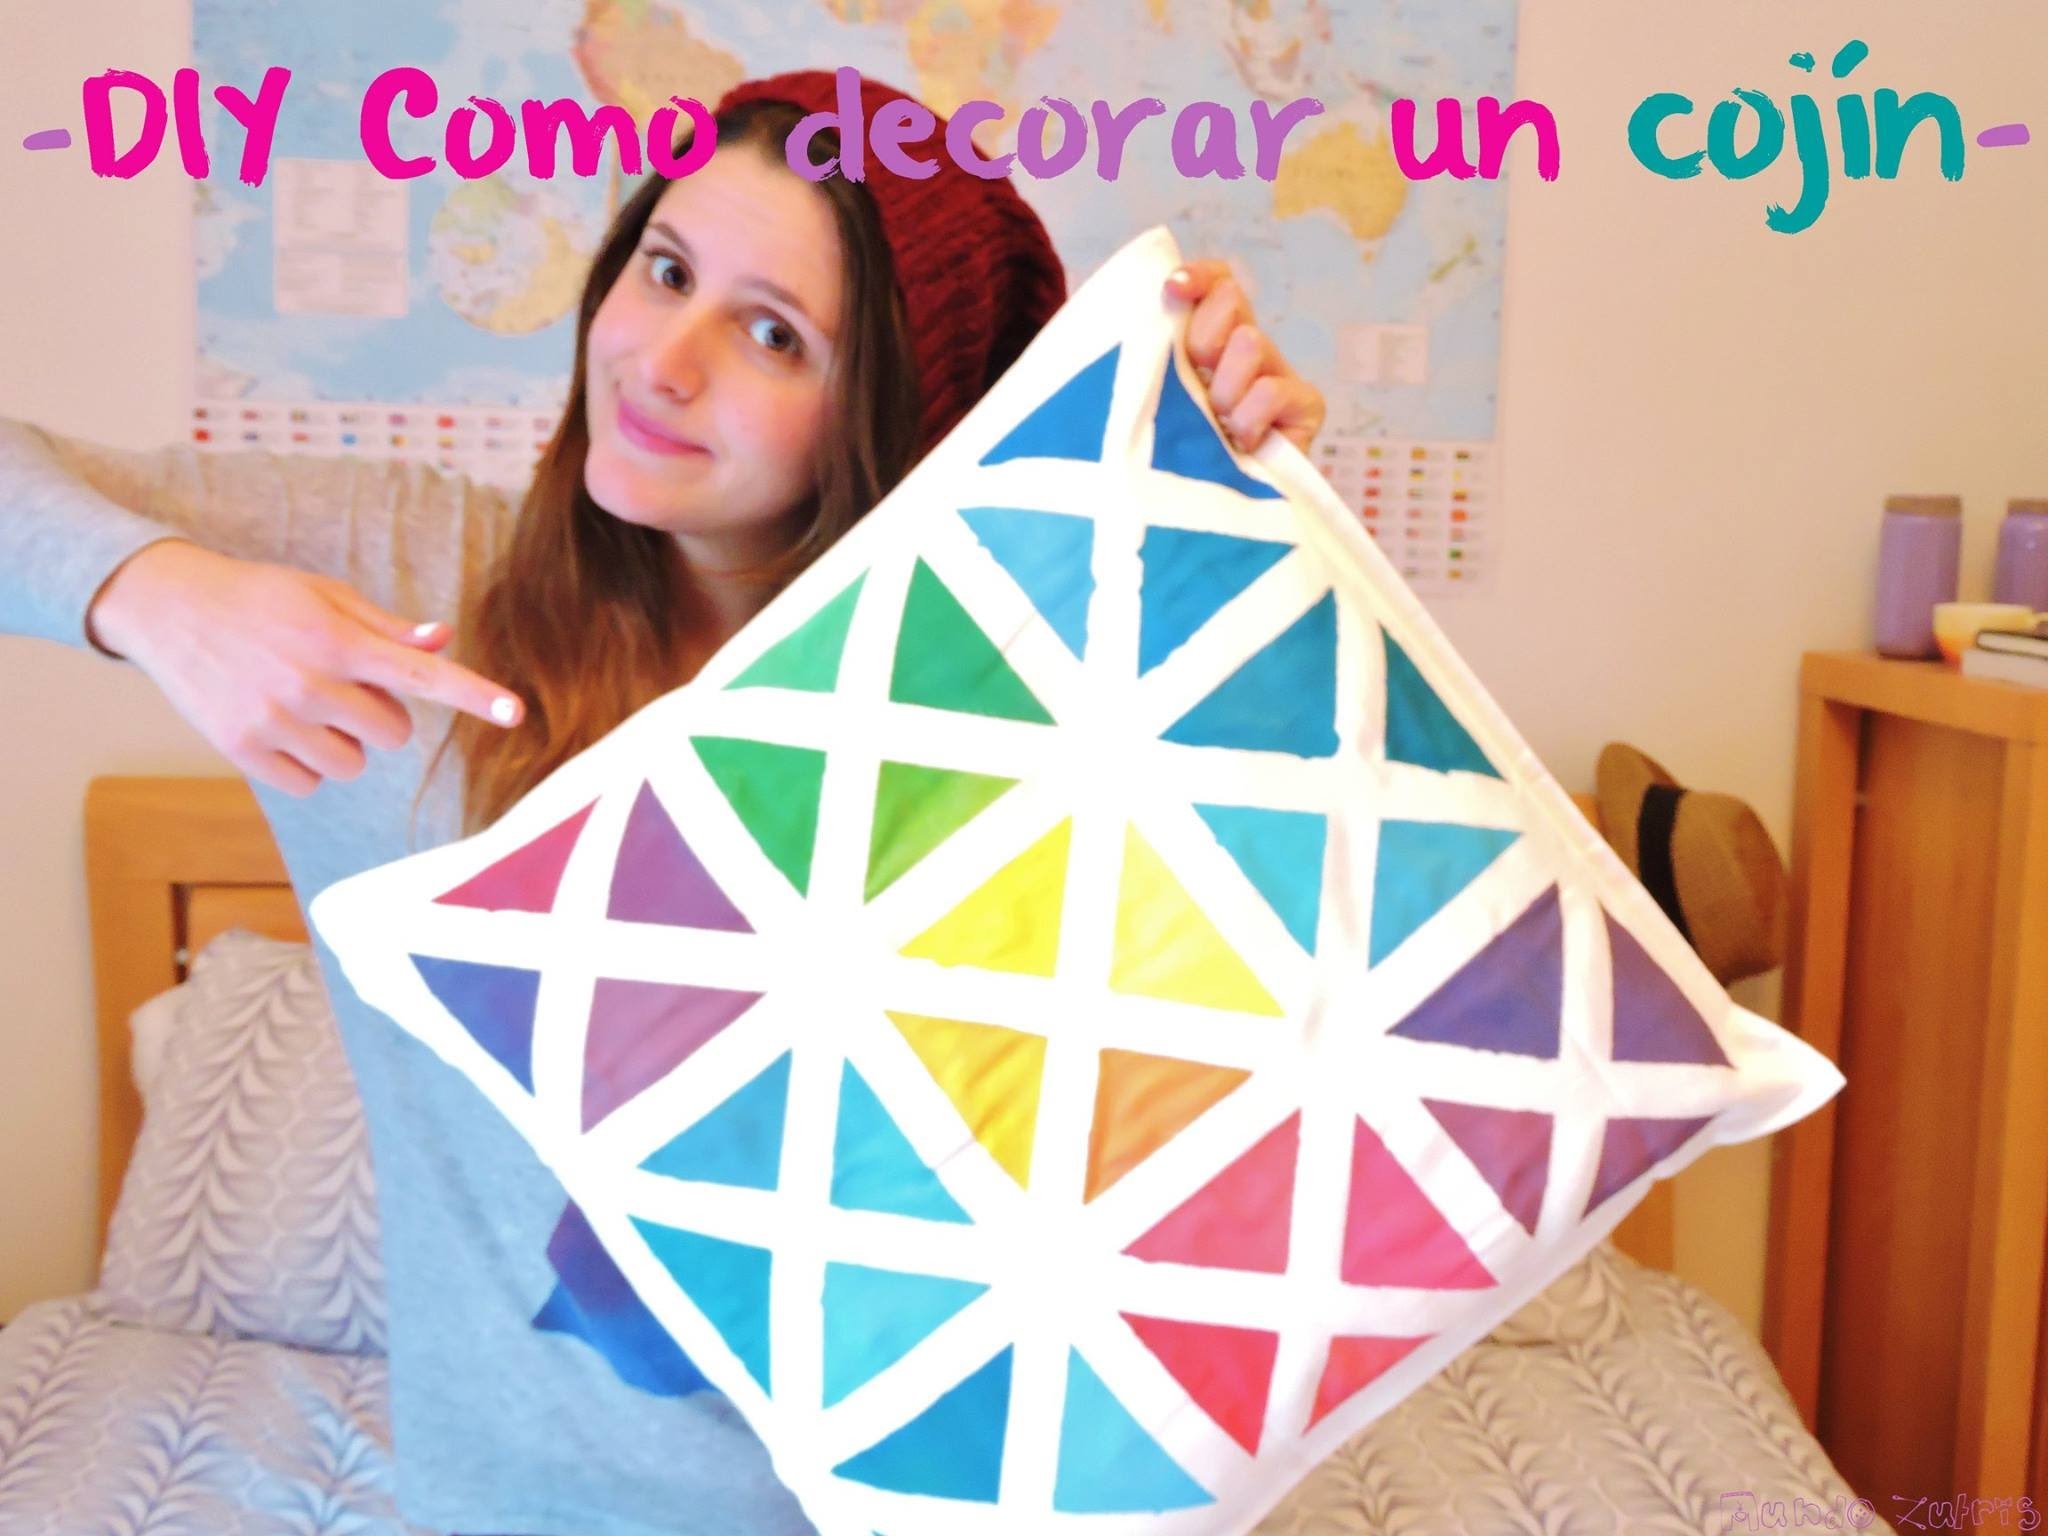 DIY Como decorar un cojín. DIY How to decorate a pillow